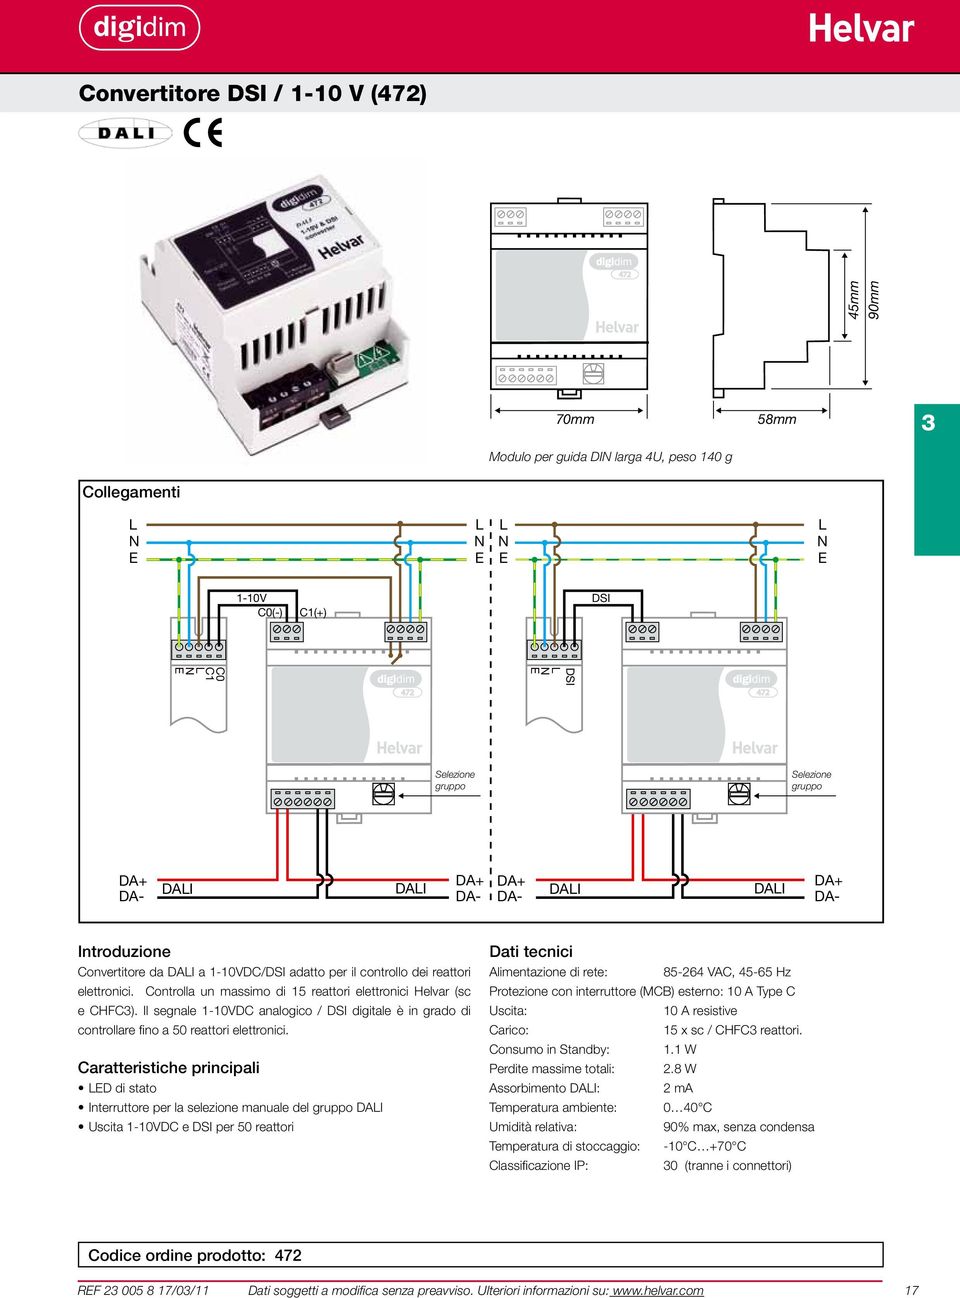 Il segnale 1-10VDC analogico / DSI digitale è in grado di controllare fino a 50 reattori elettronici.